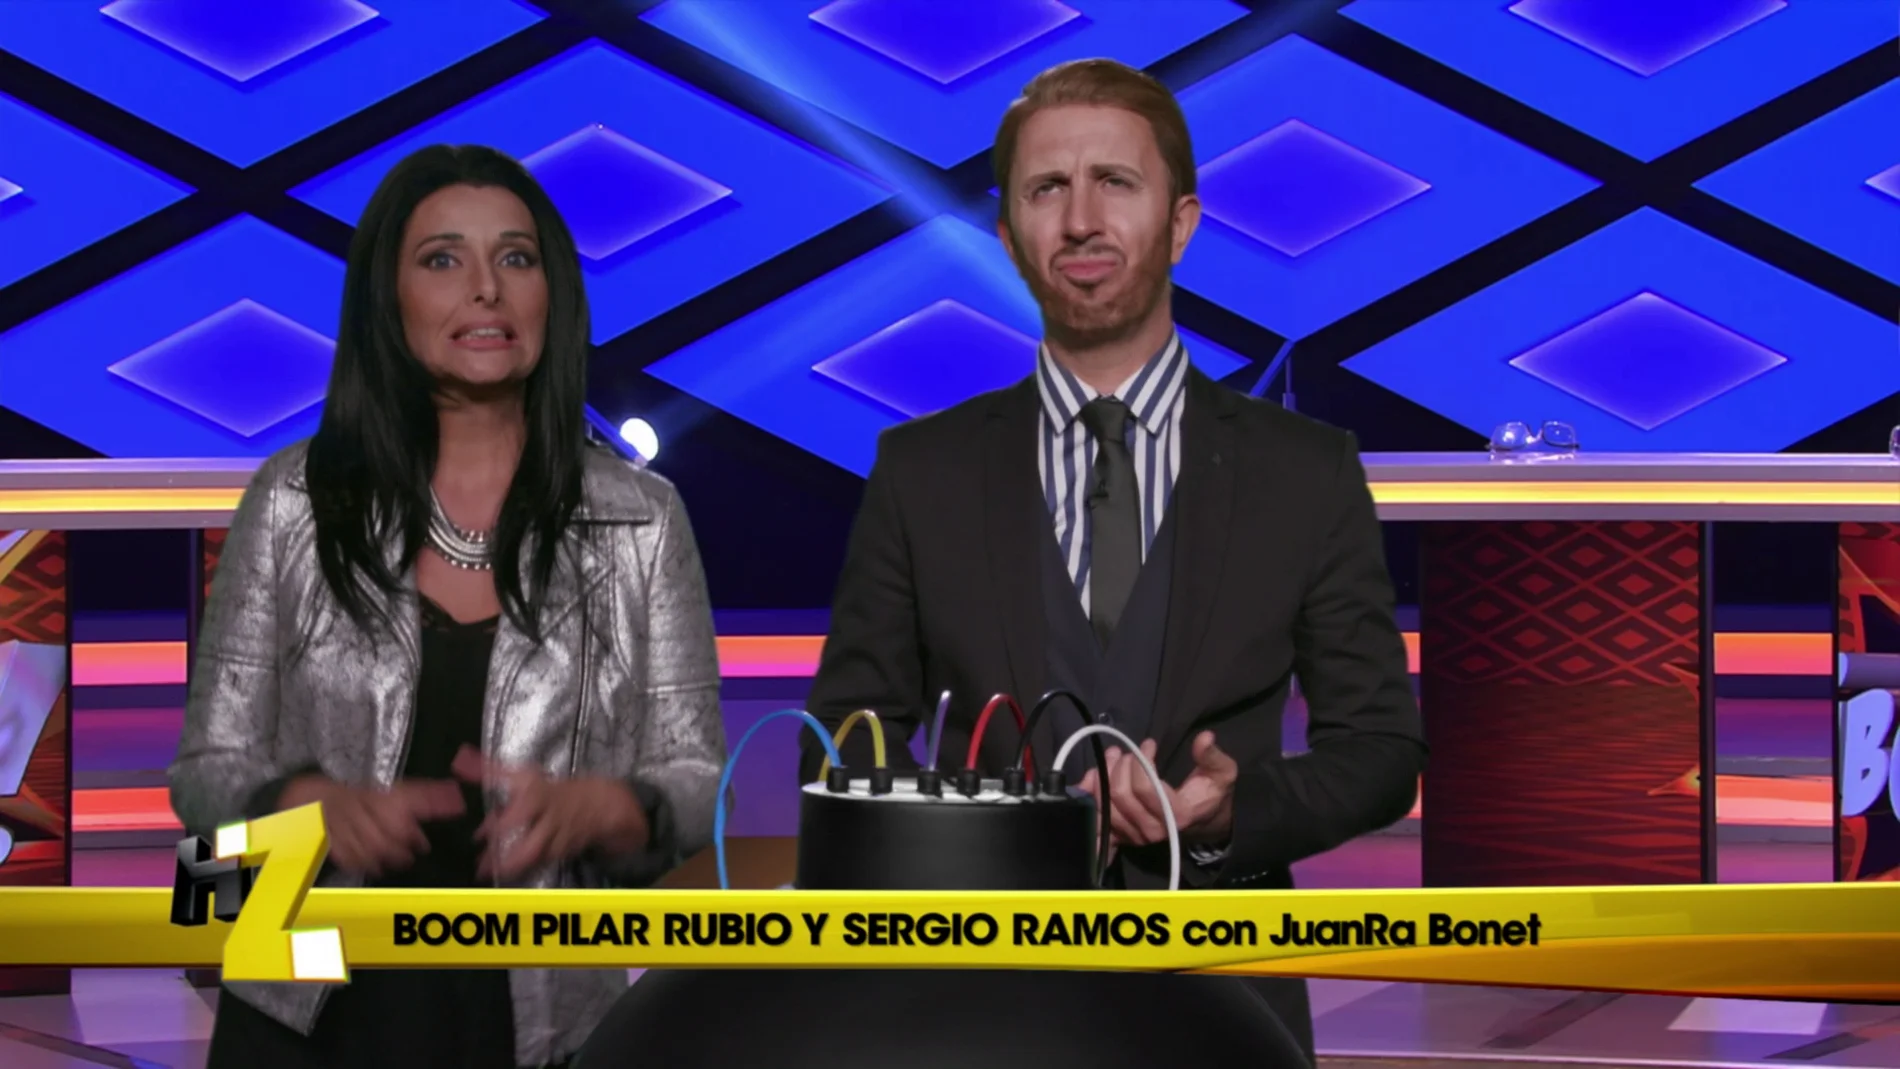 Pilar Rubio y Sergio Ramos concursan en ‘¡Boom!’, el domingo en ‘Homo Zapping’